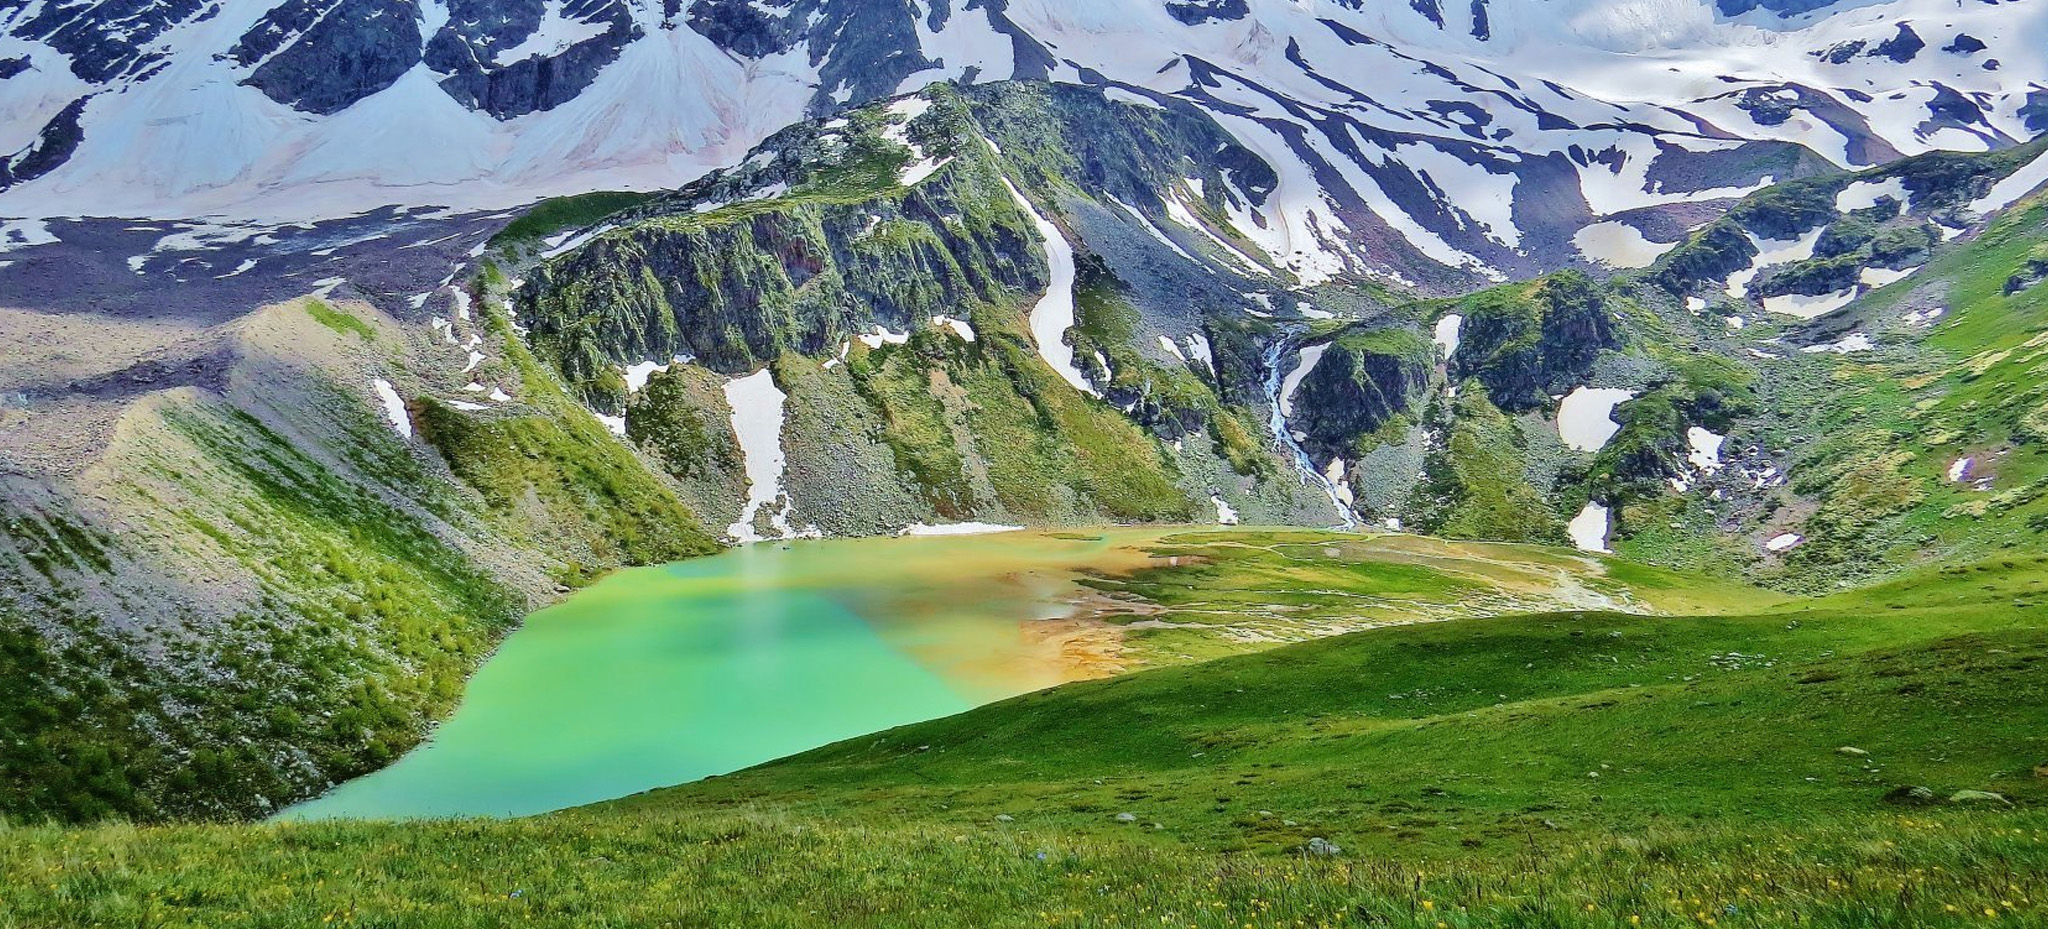 Lake Donguz-Orun Kel — Mount Cheget